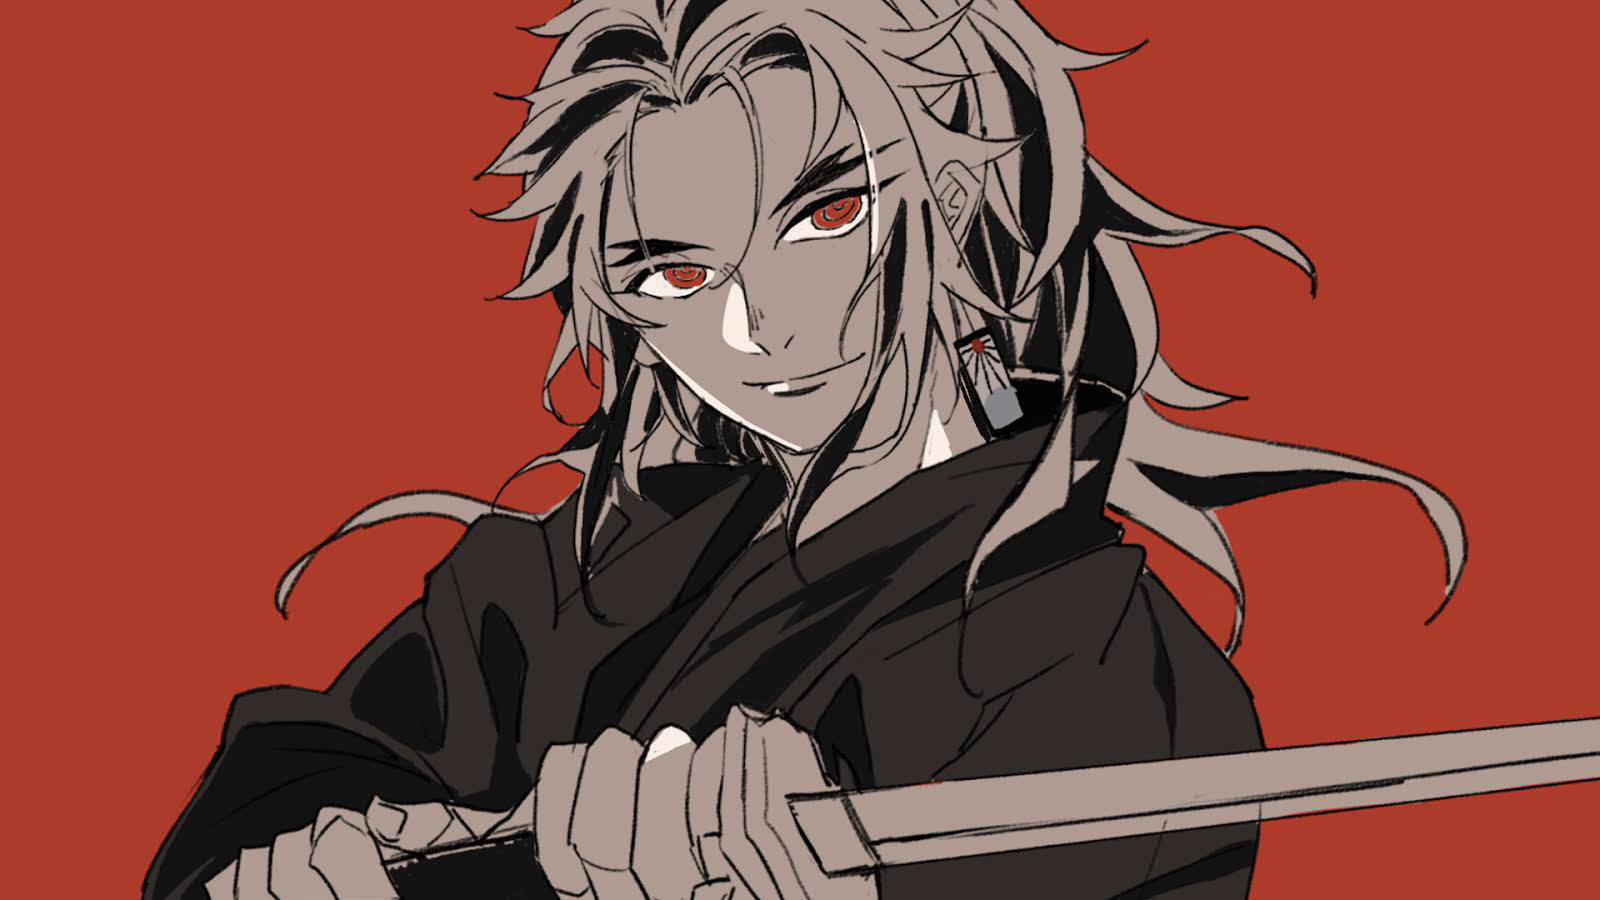 Giật mình khi thấy dàn nhân vật Kimetsu no Yaiba trở nên khác lạ với đôi mắt sắc lẹm như dao - Ảnh 6.